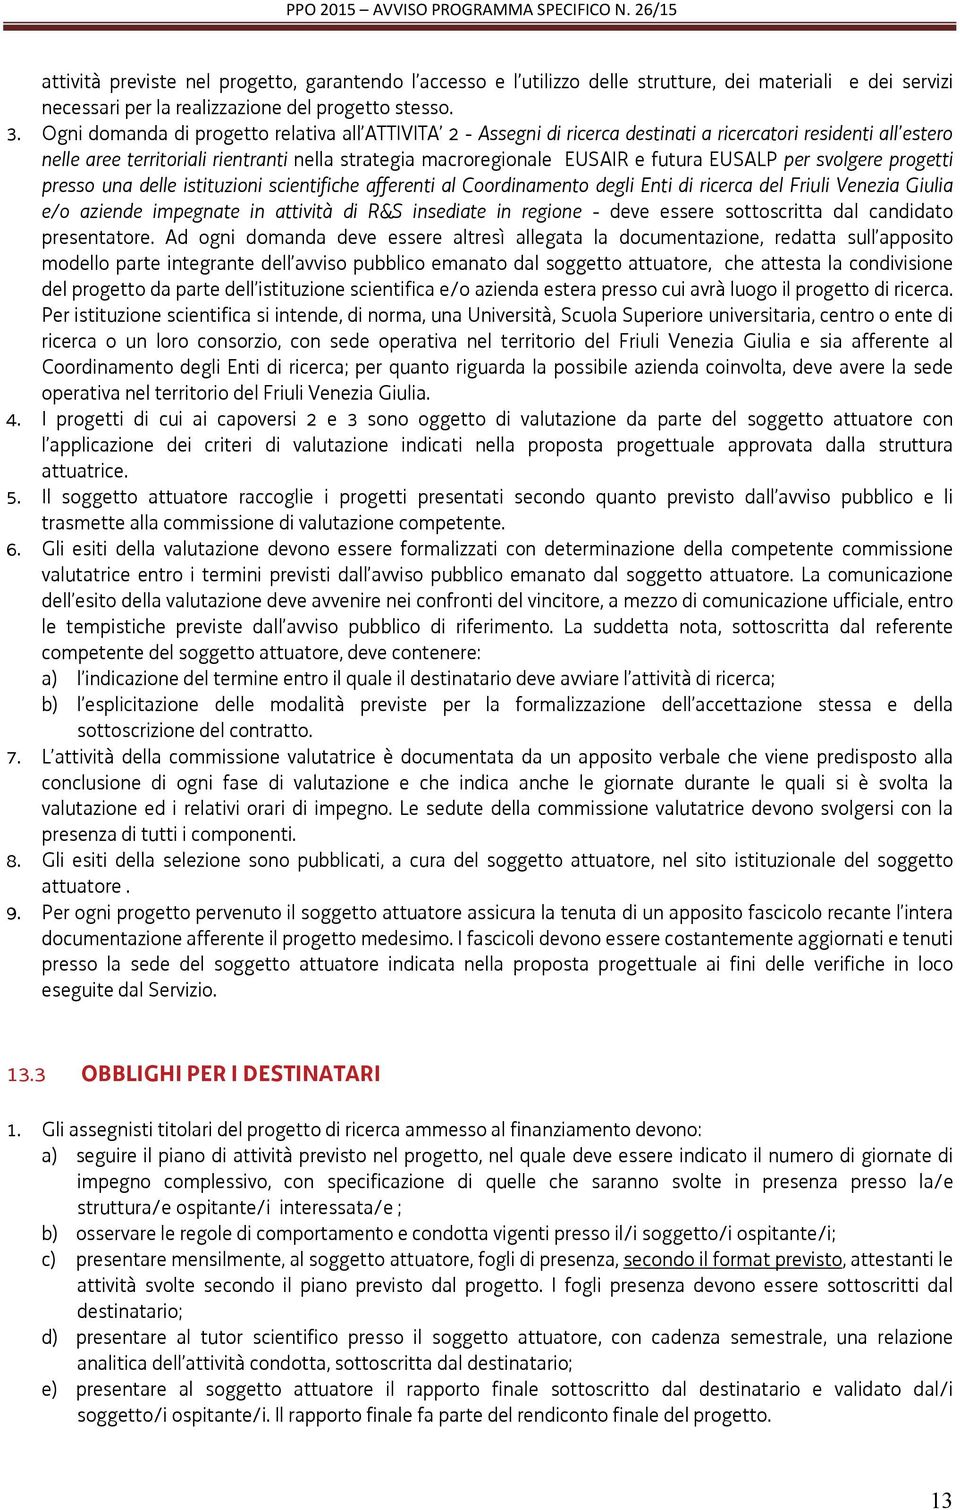 EUSALP per svolgere progetti presso una delle istituzioni scientifiche afferenti al Coordinamento degli Enti di ricerca del Friuli Venezia Giulia e/o aziende impegnate in attività di R&S insediate in